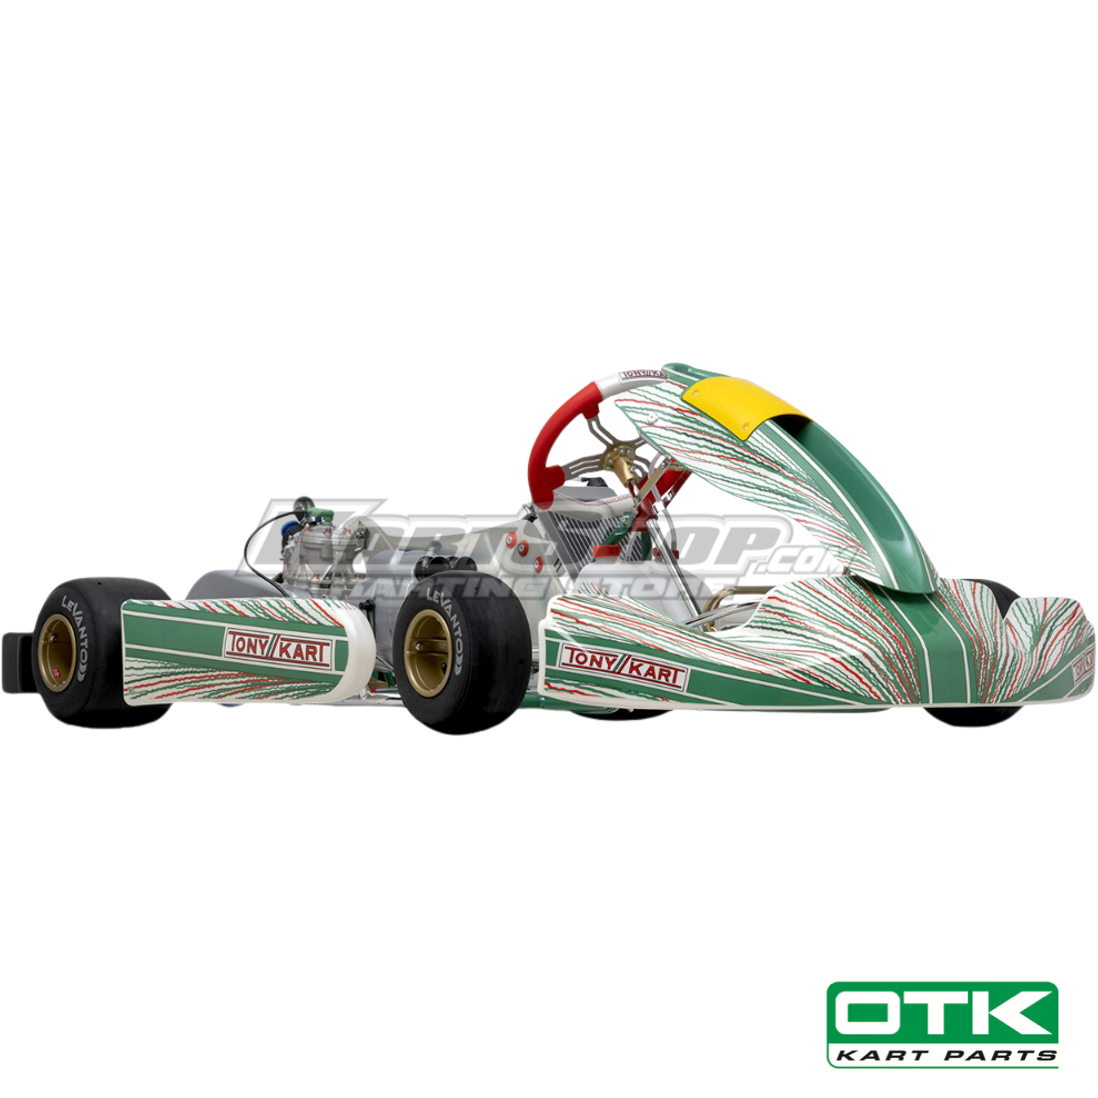 Tonykart Racer 401RR, KZ